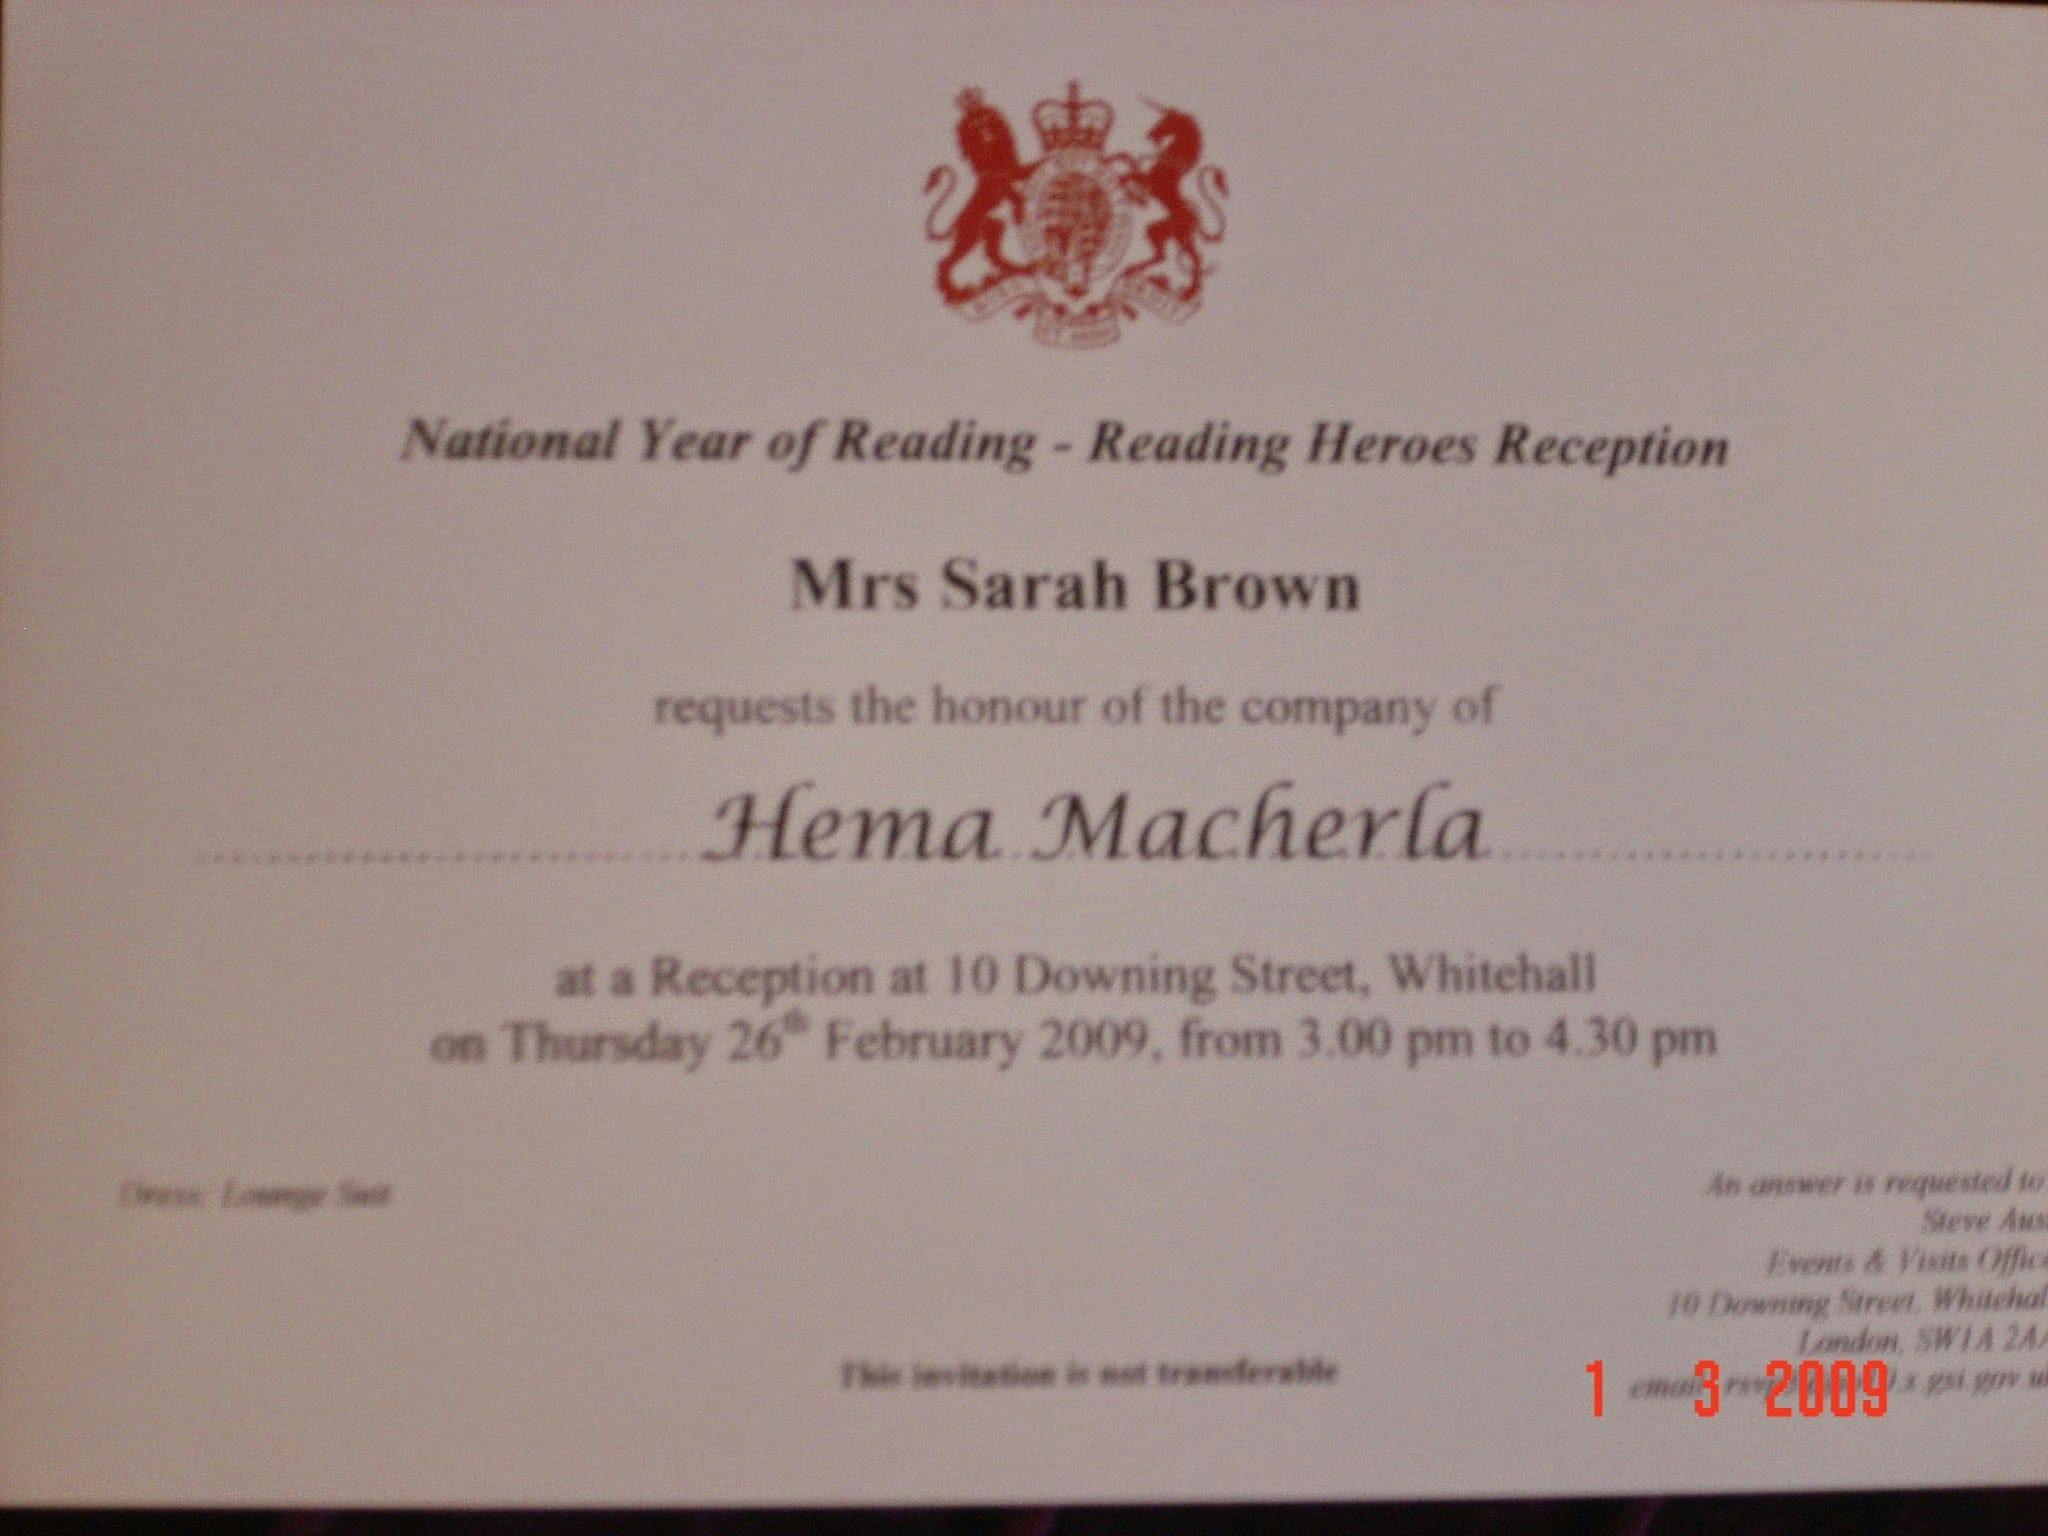 My Reading Hero award invitation from 10 Downing Street in 2009 